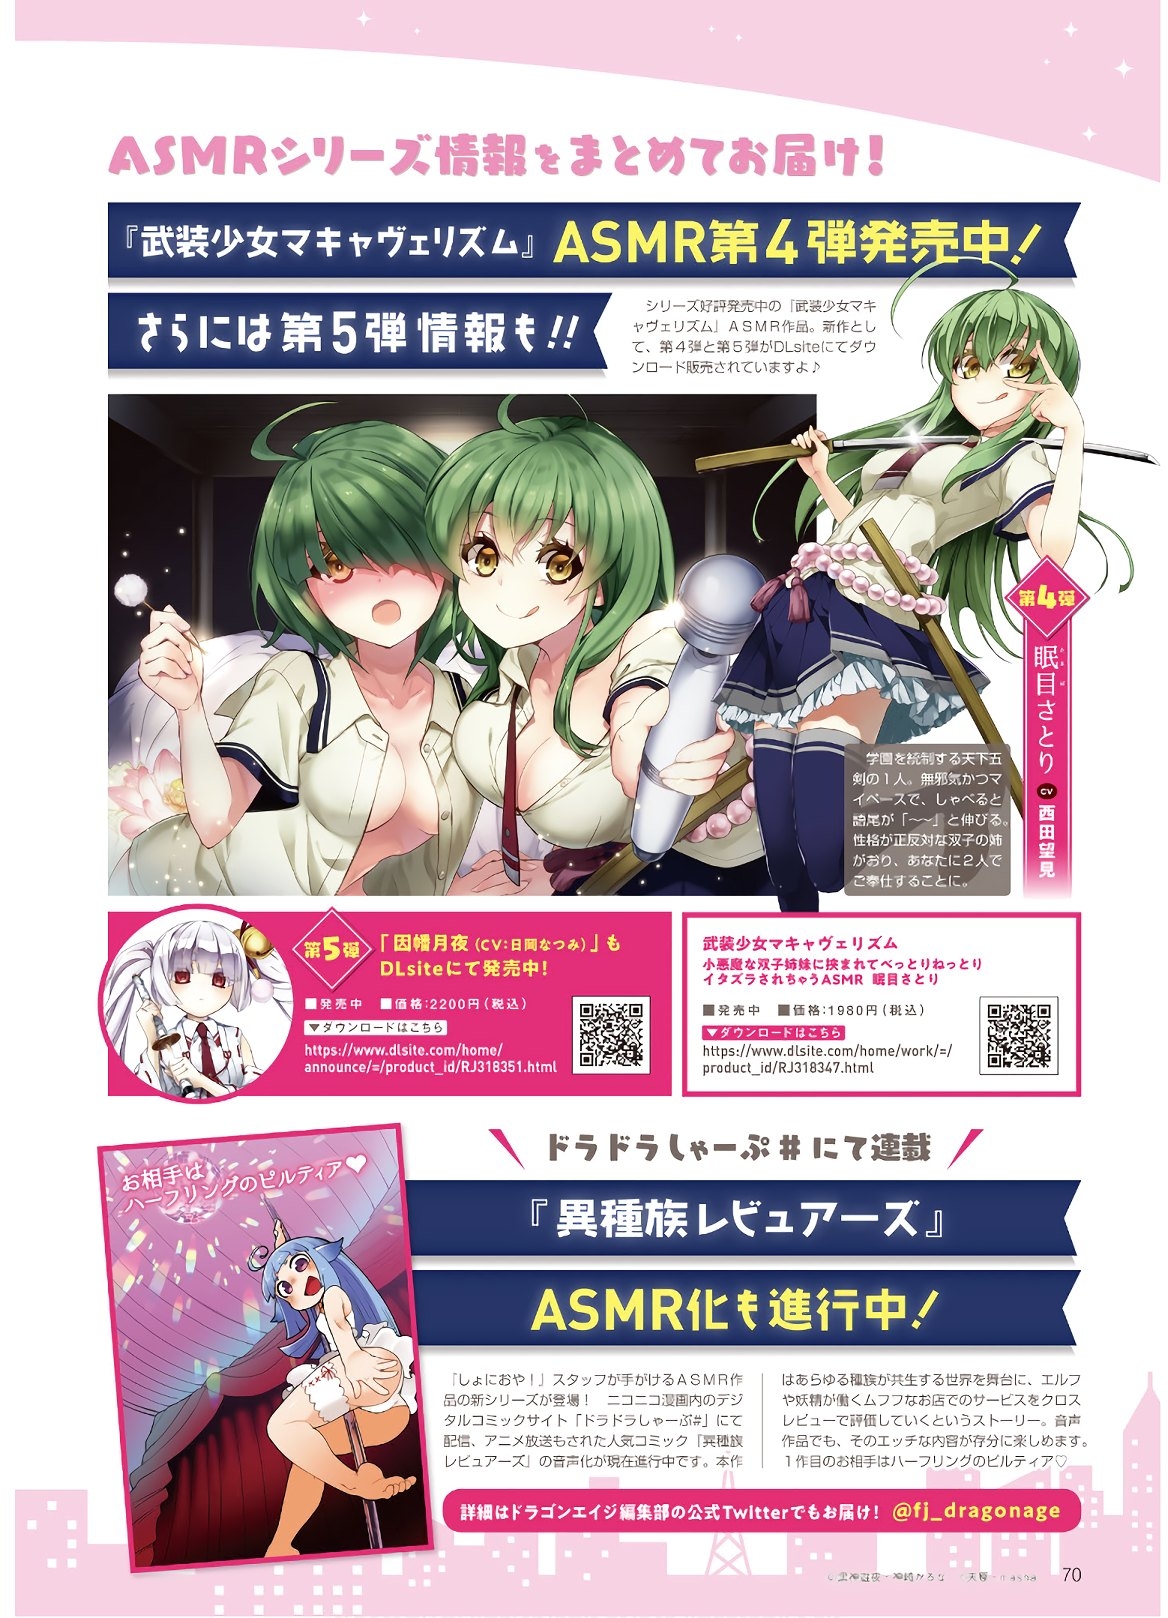 Dengeki G's Magazine #286 - May 2021 67